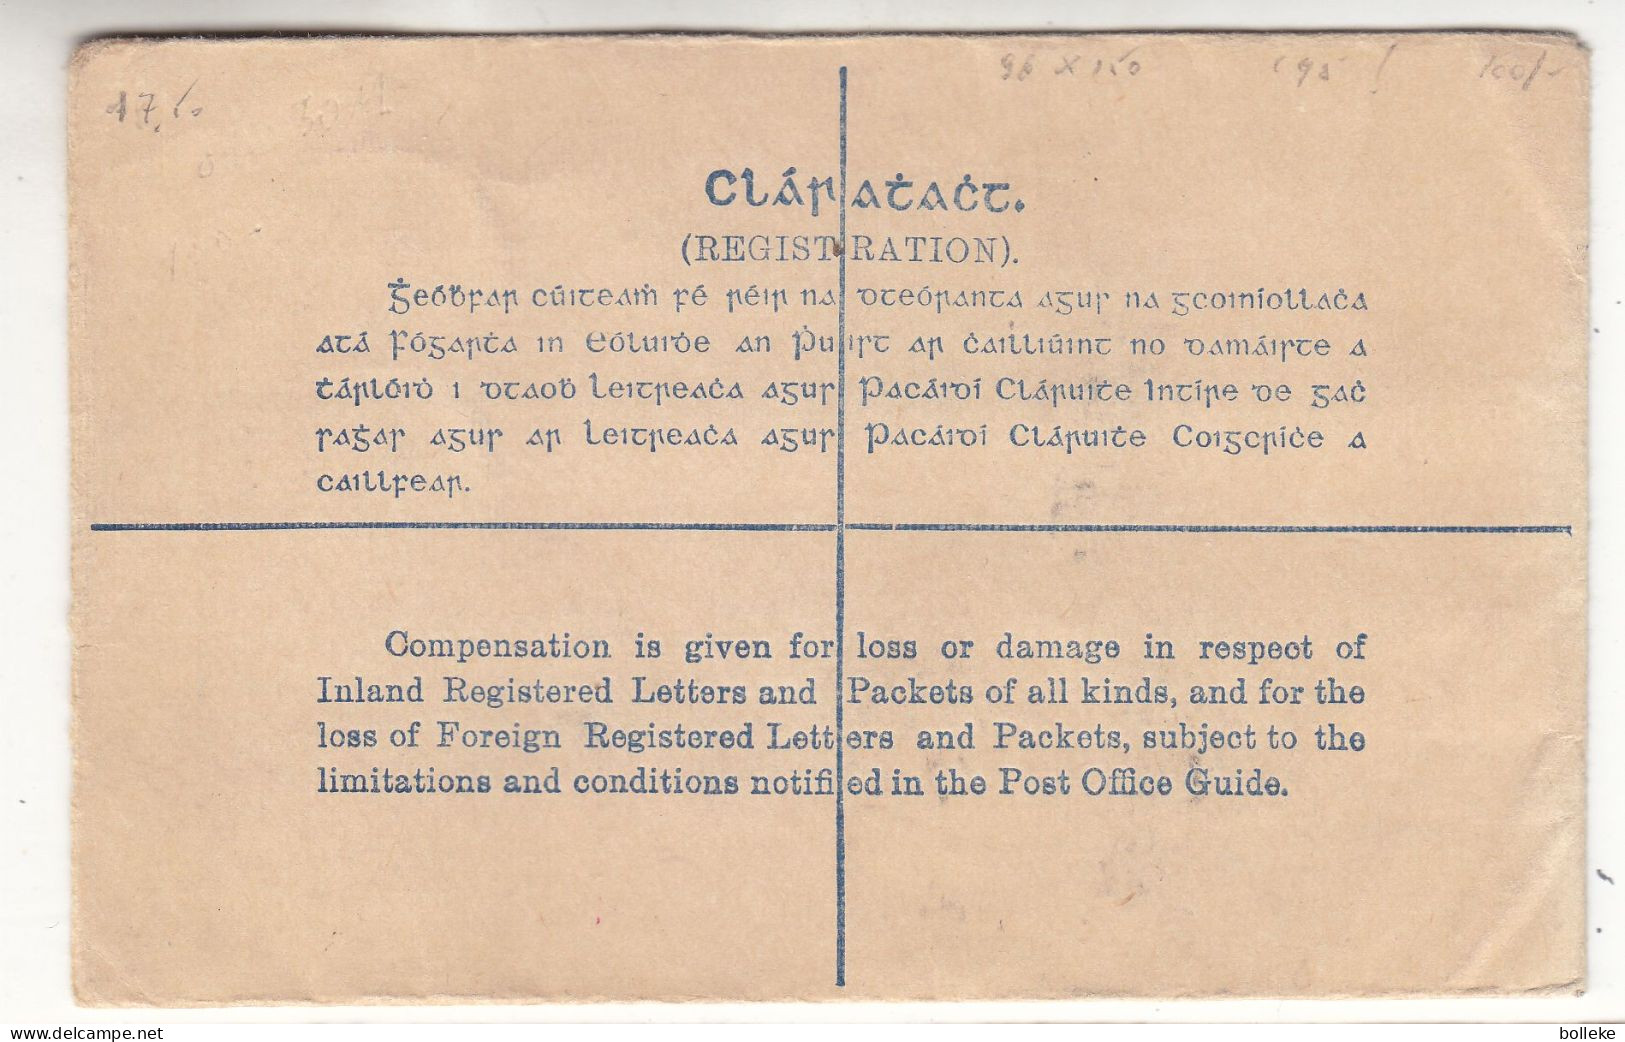 Irlande - Lettre De 1931 - Entier Postal - Expédié Vers Anvers - Mesure 96 X 150 - Valeur 95 €  ! - Cartas